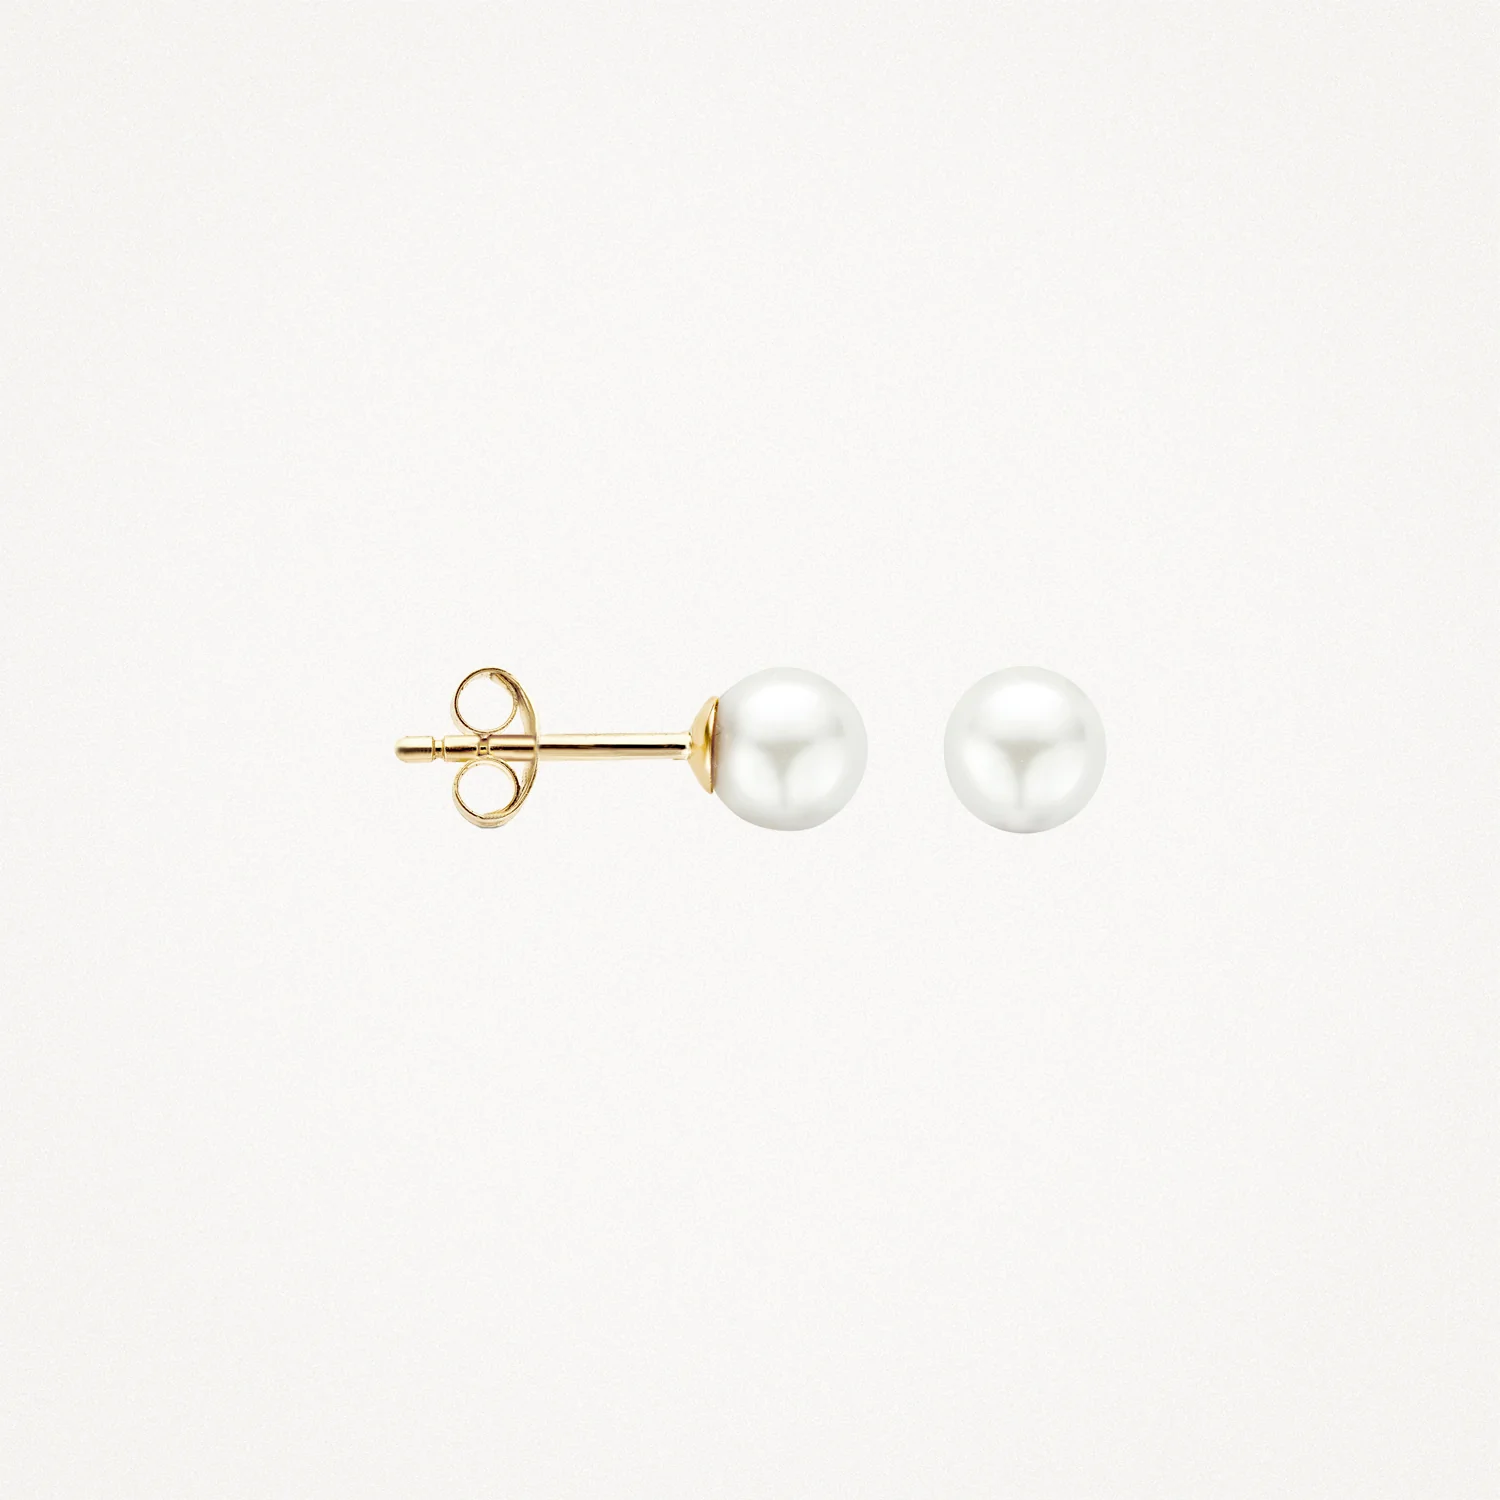 Blush Gold & Pearl Stud Earrings - Medium